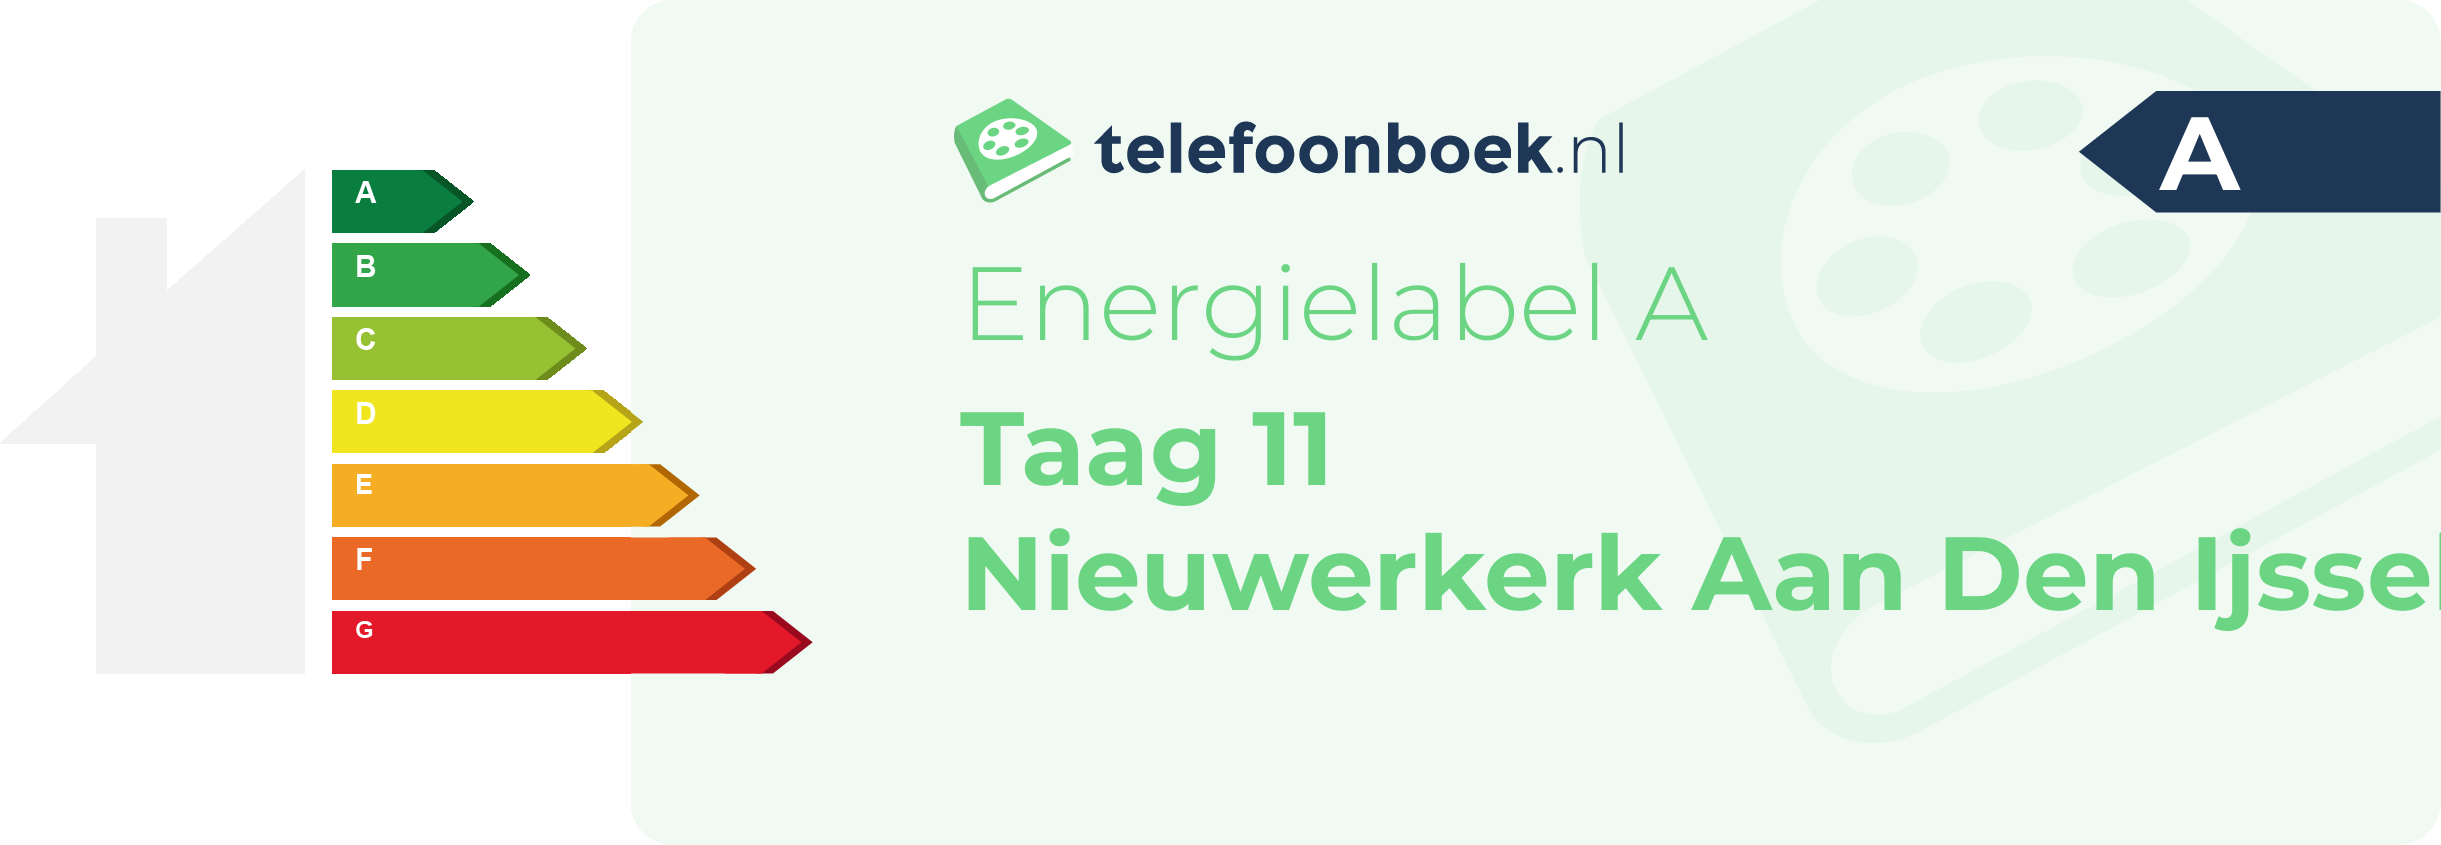 Energielabel Taag 11 Nieuwerkerk Aan Den Ijssel